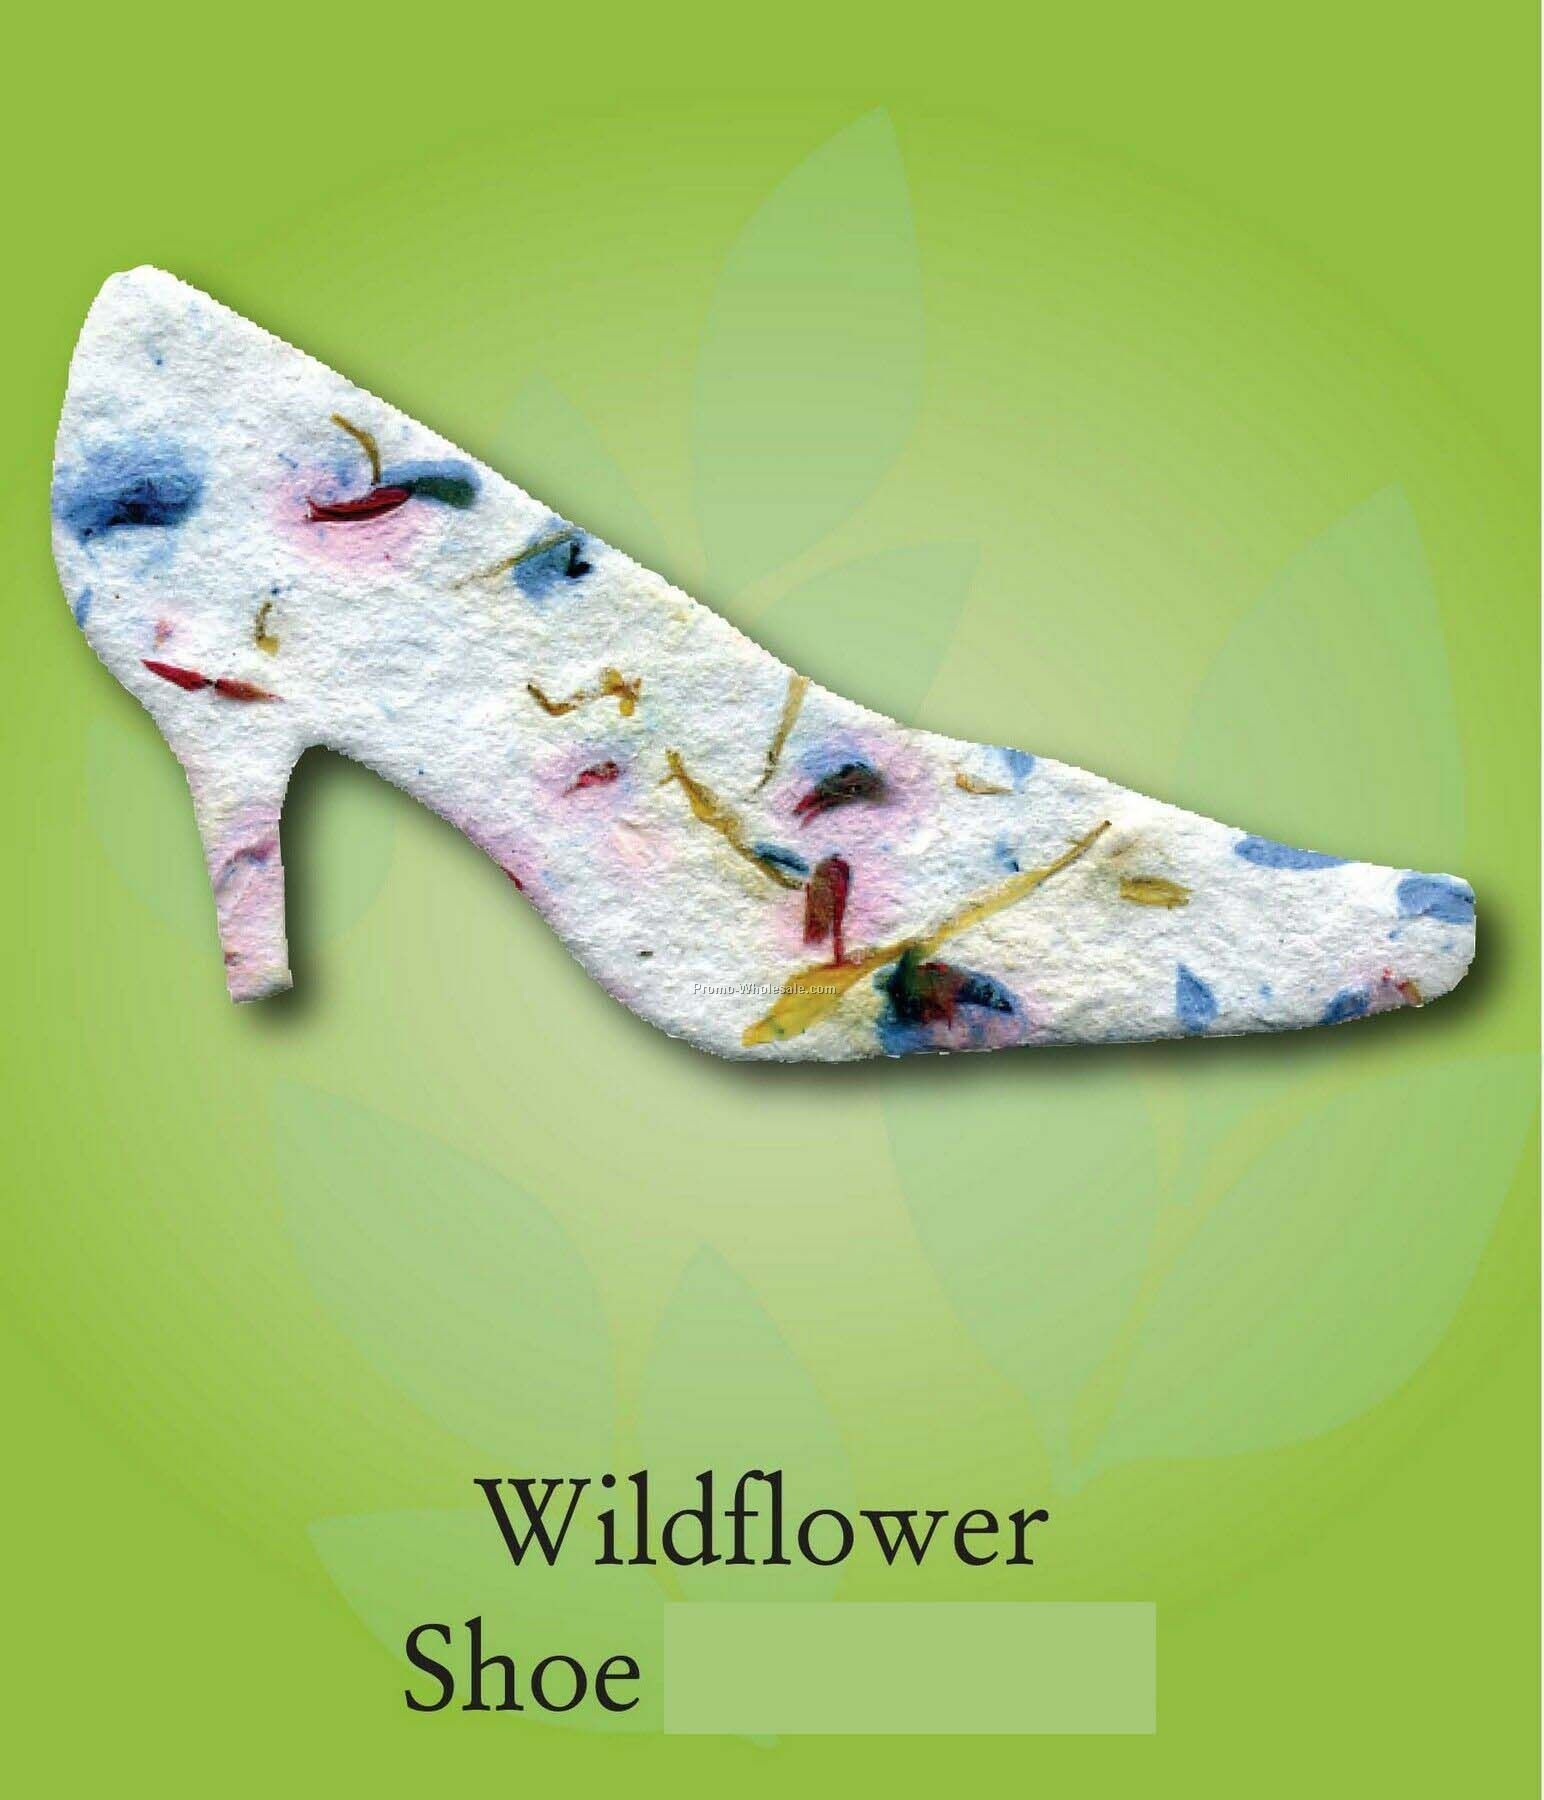 Wildflower Shoe Ornament W/ Embedded Seed